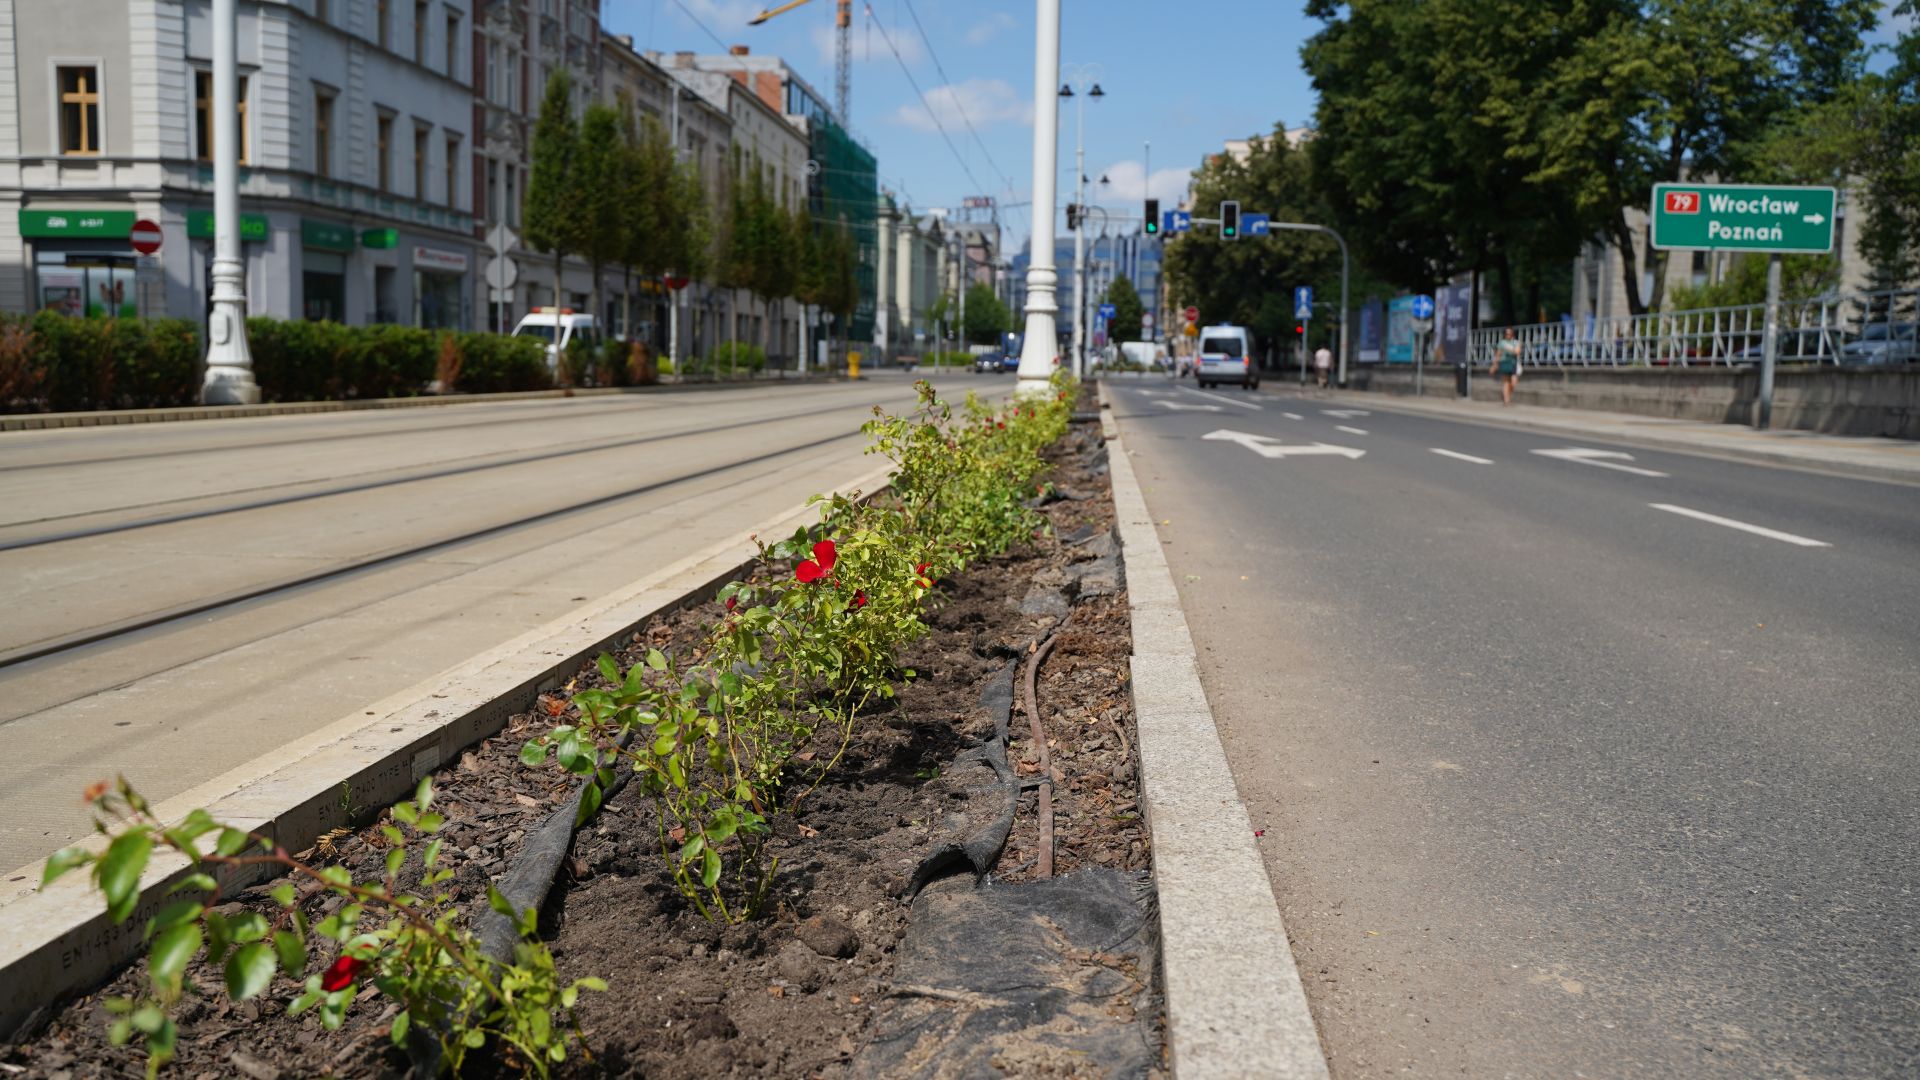 Trwają prace przy ulicy Warszawskiej, gdzie sadzone są nowe róże